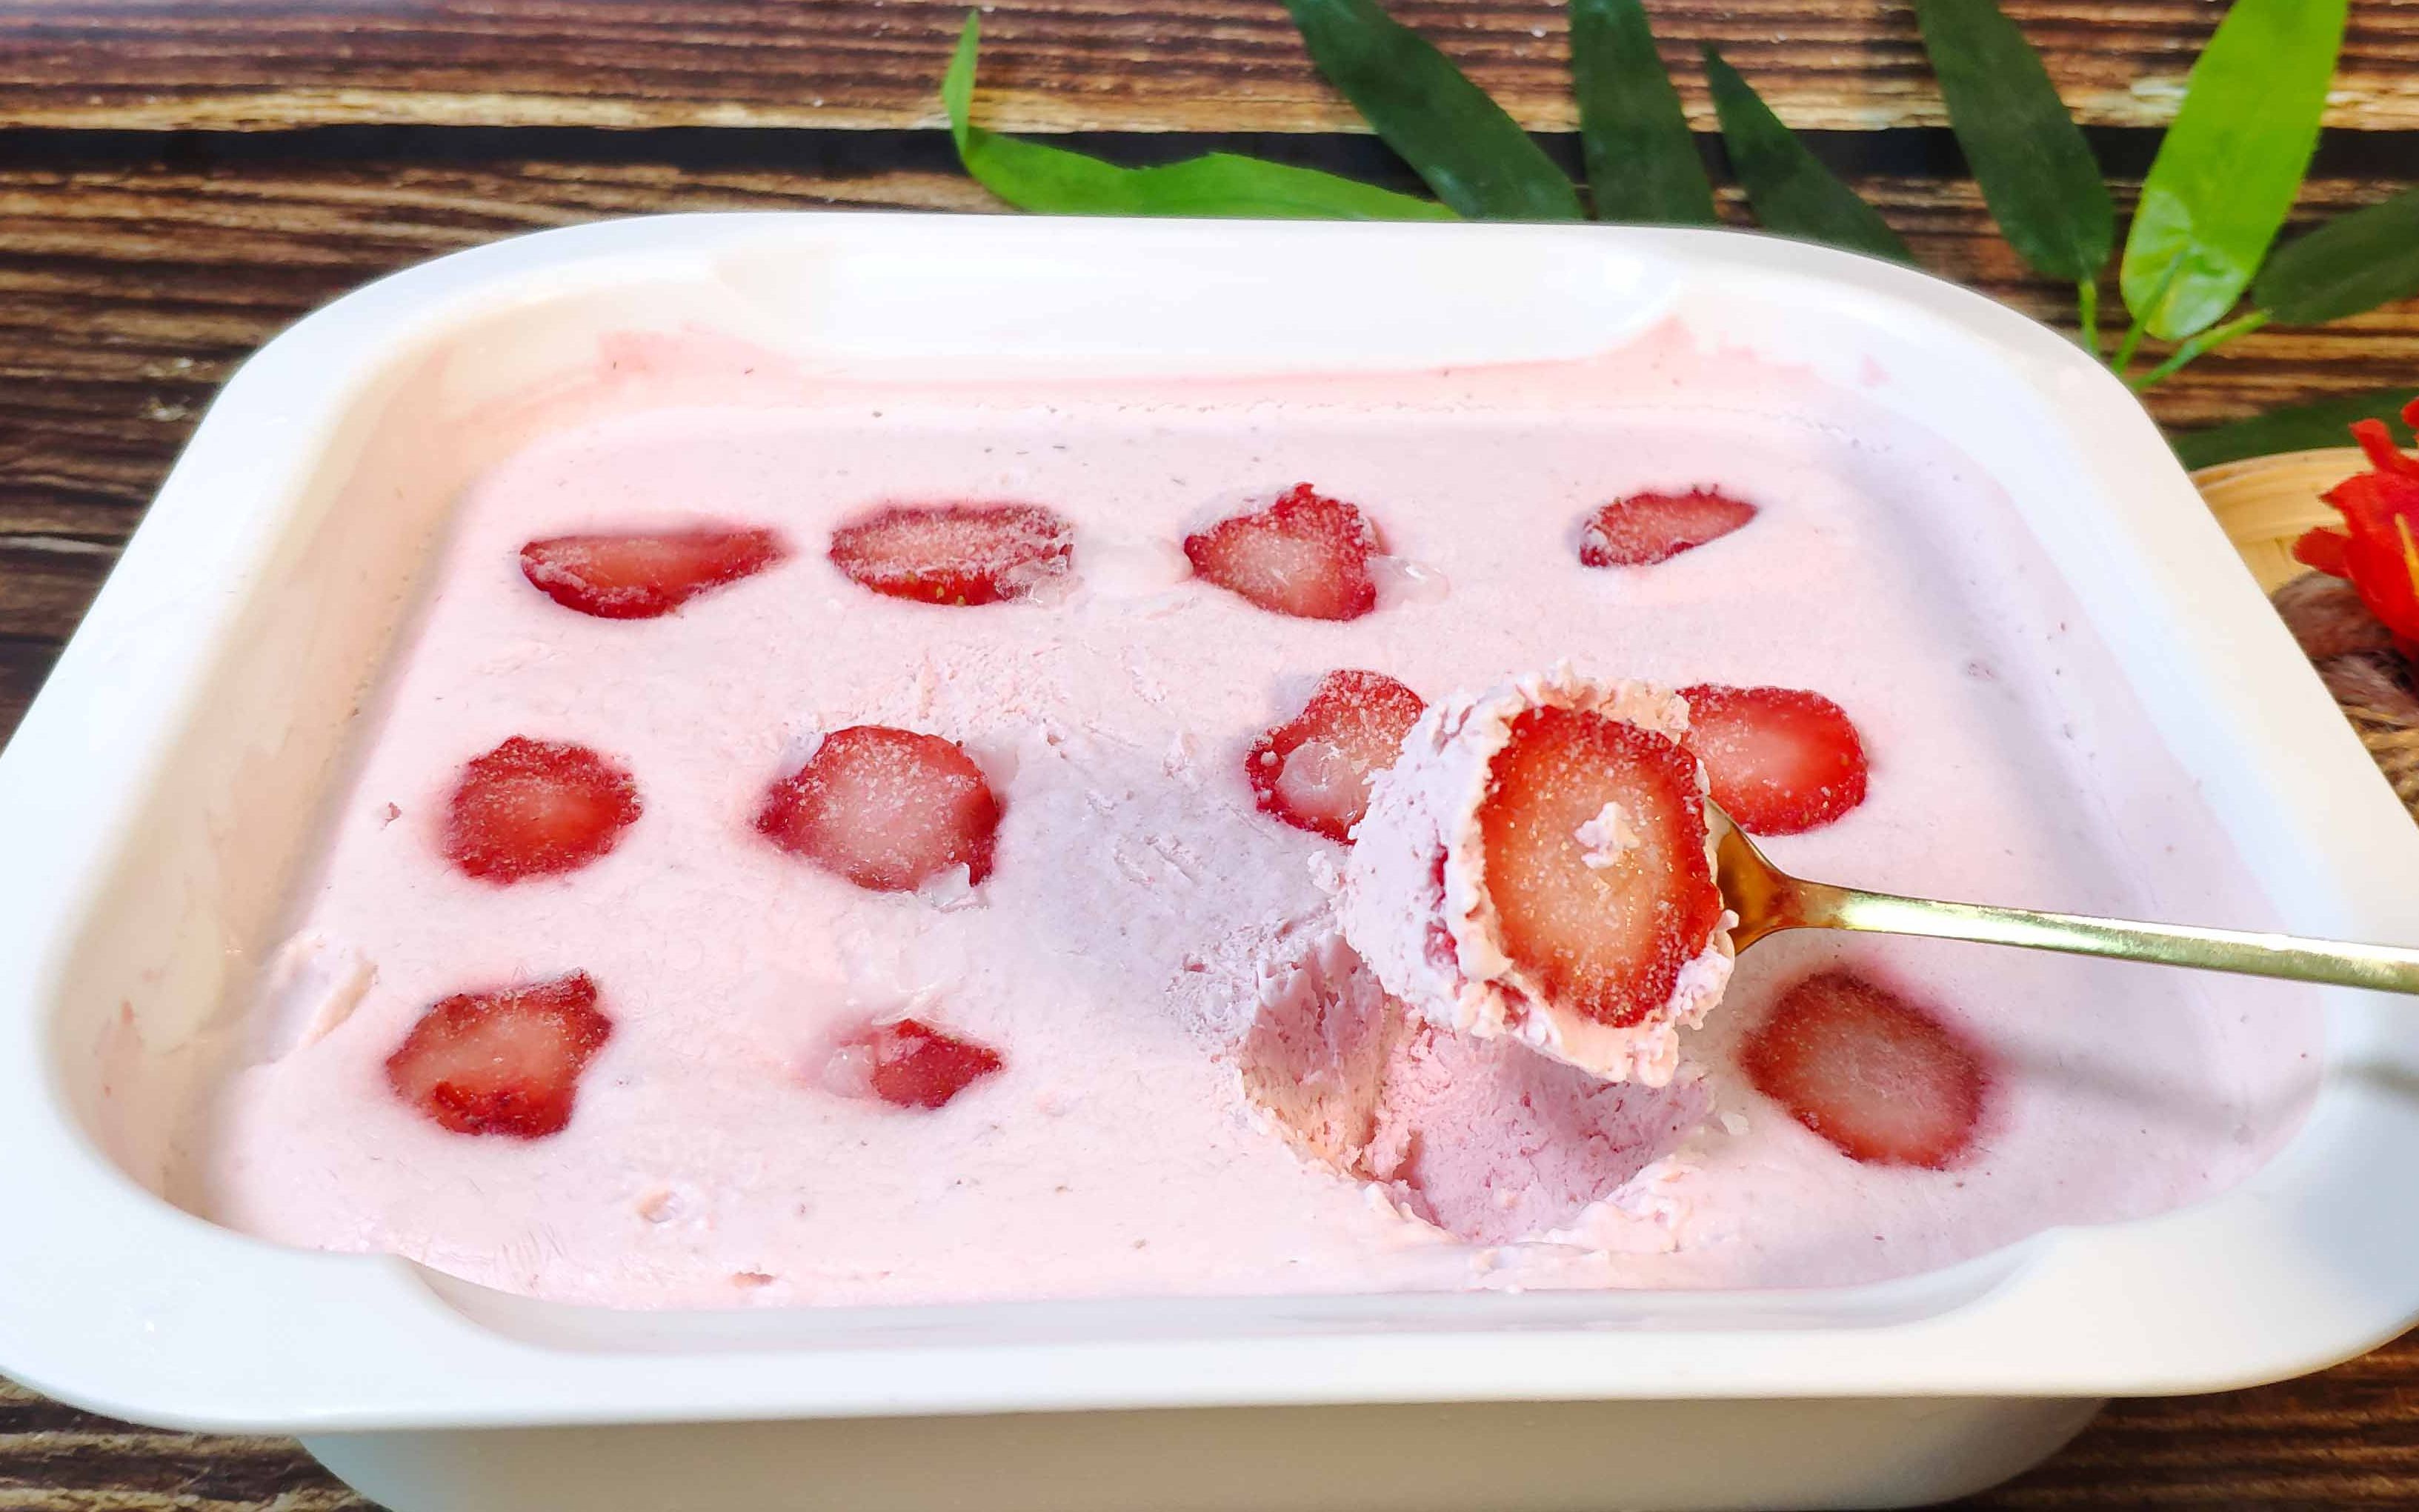 自制健康的草莓冰淇淋 - 日本男子的家庭料理 | tasty-note | 每天都有新食譜！